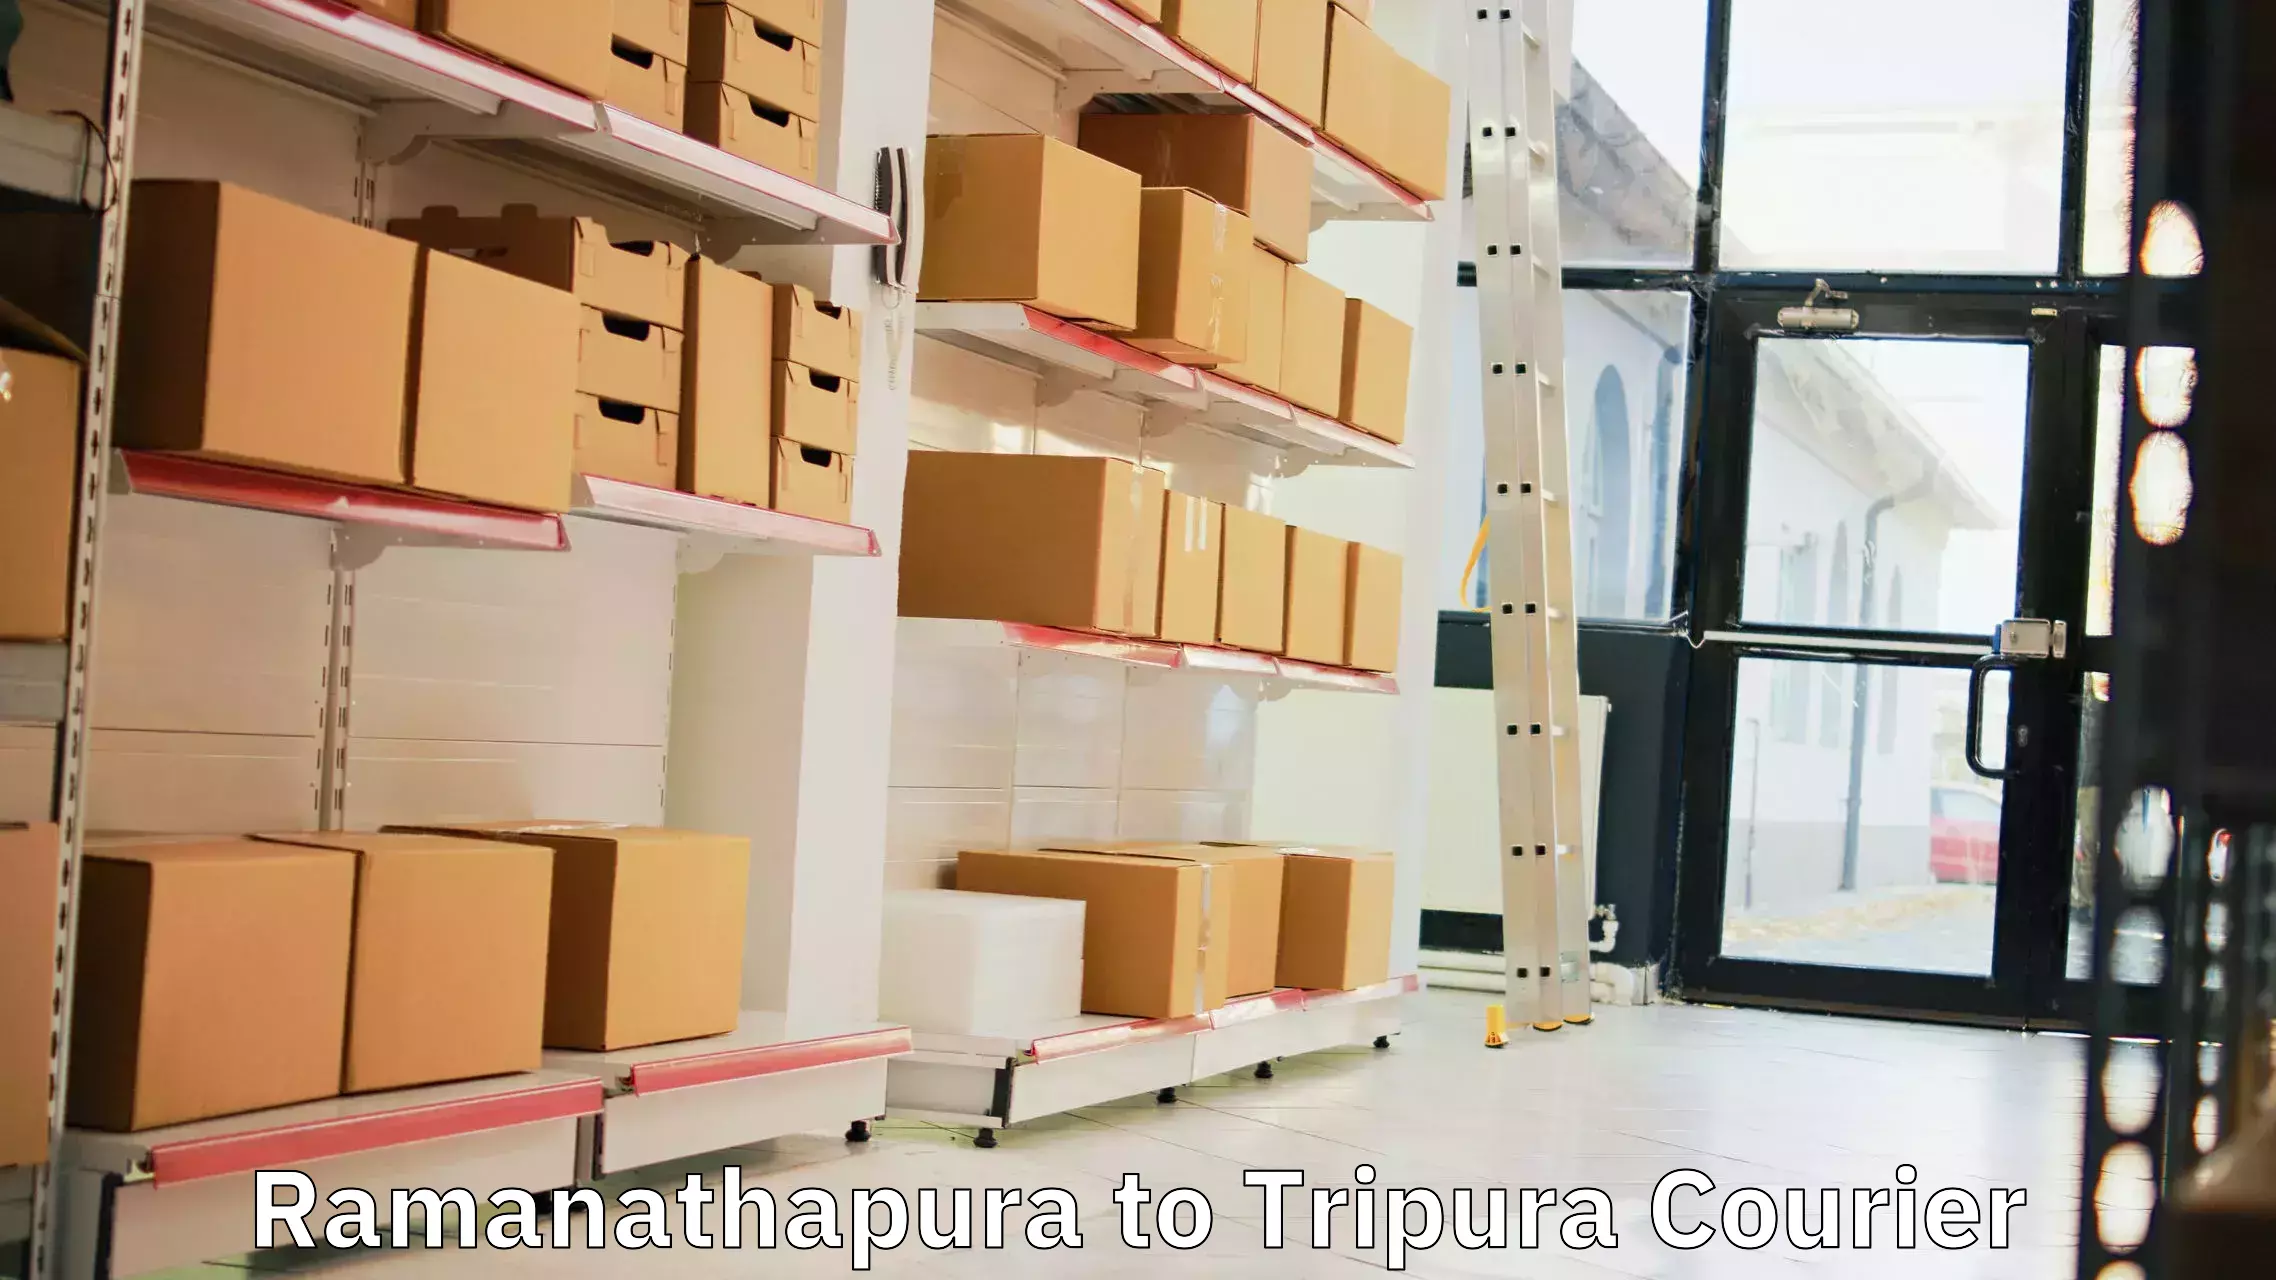 Express mail service Ramanathapura to North Tripura